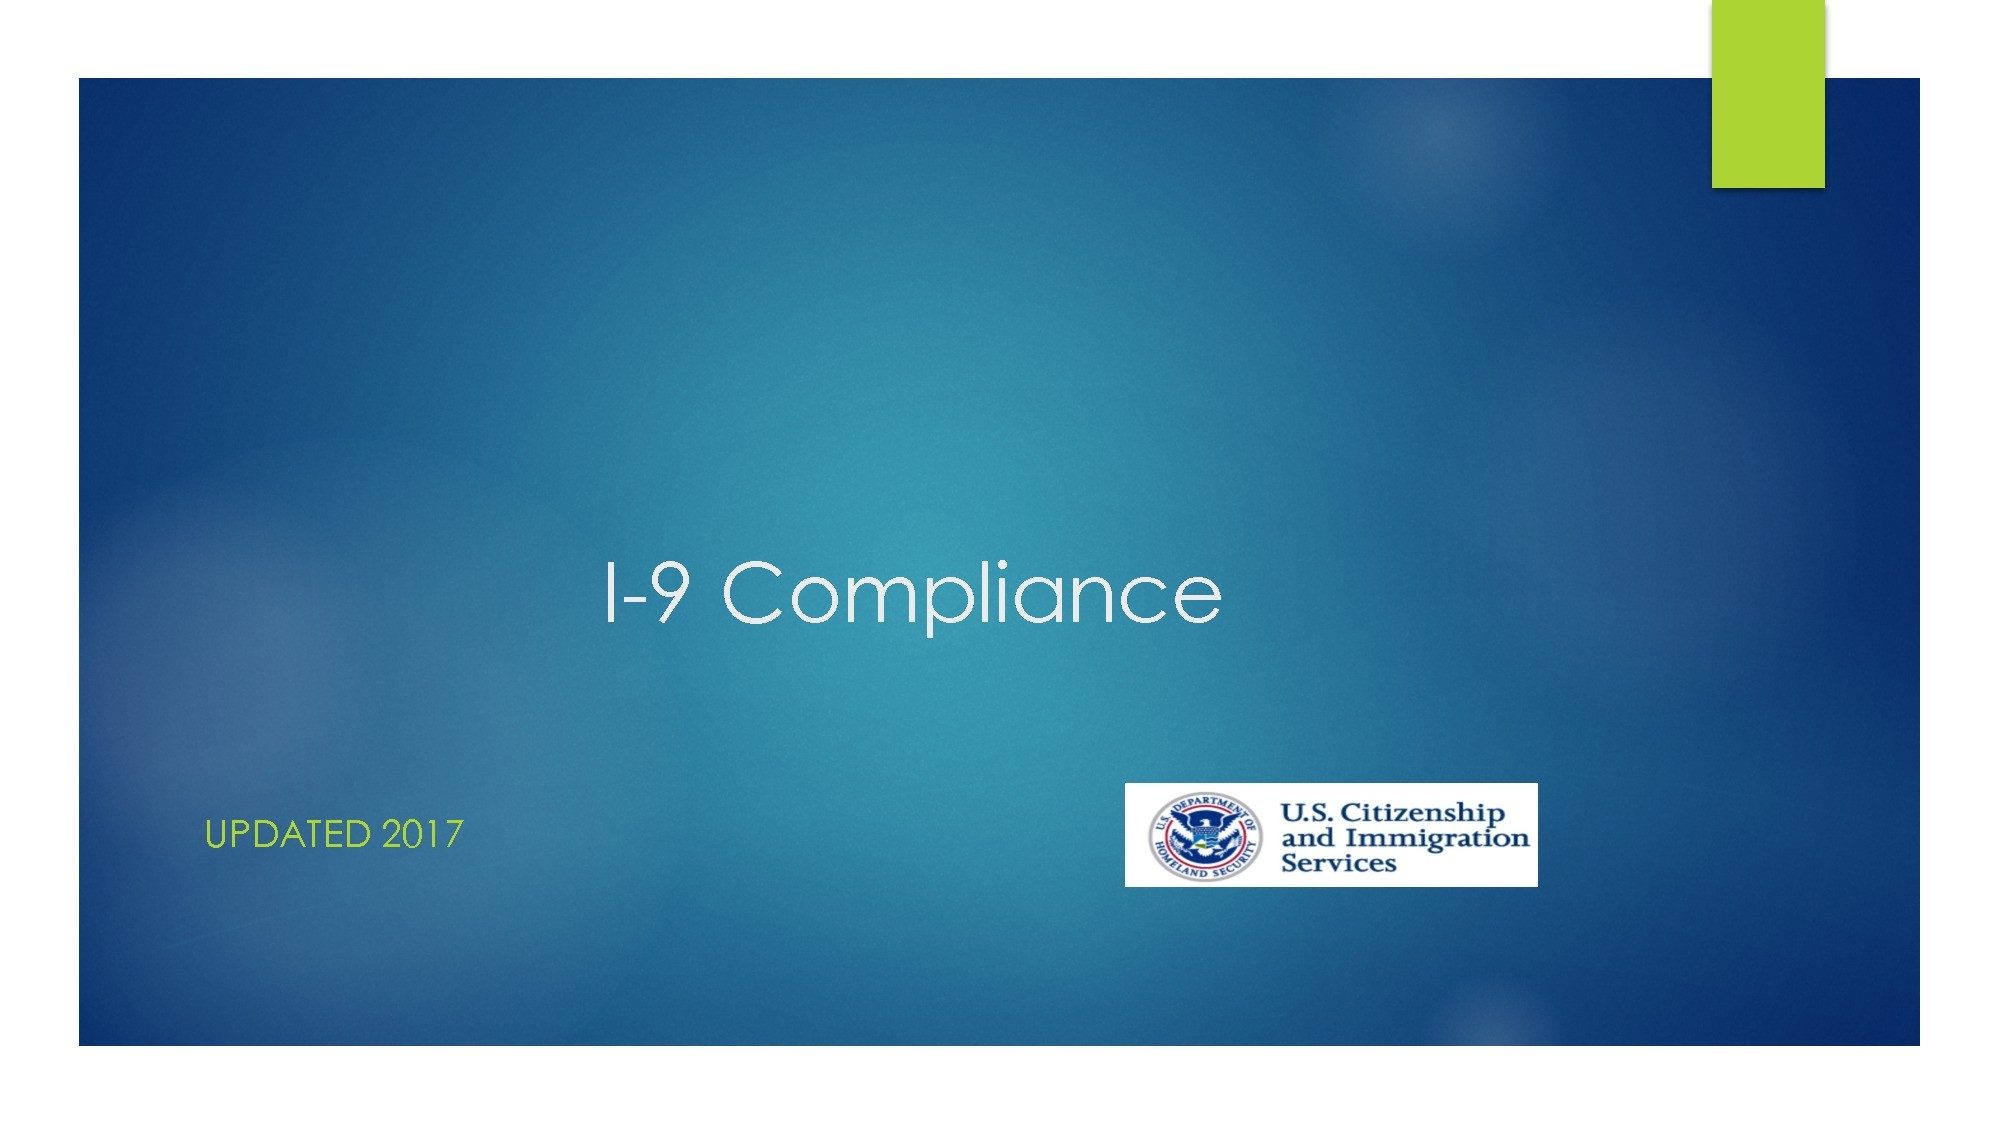 I-9 Compliance